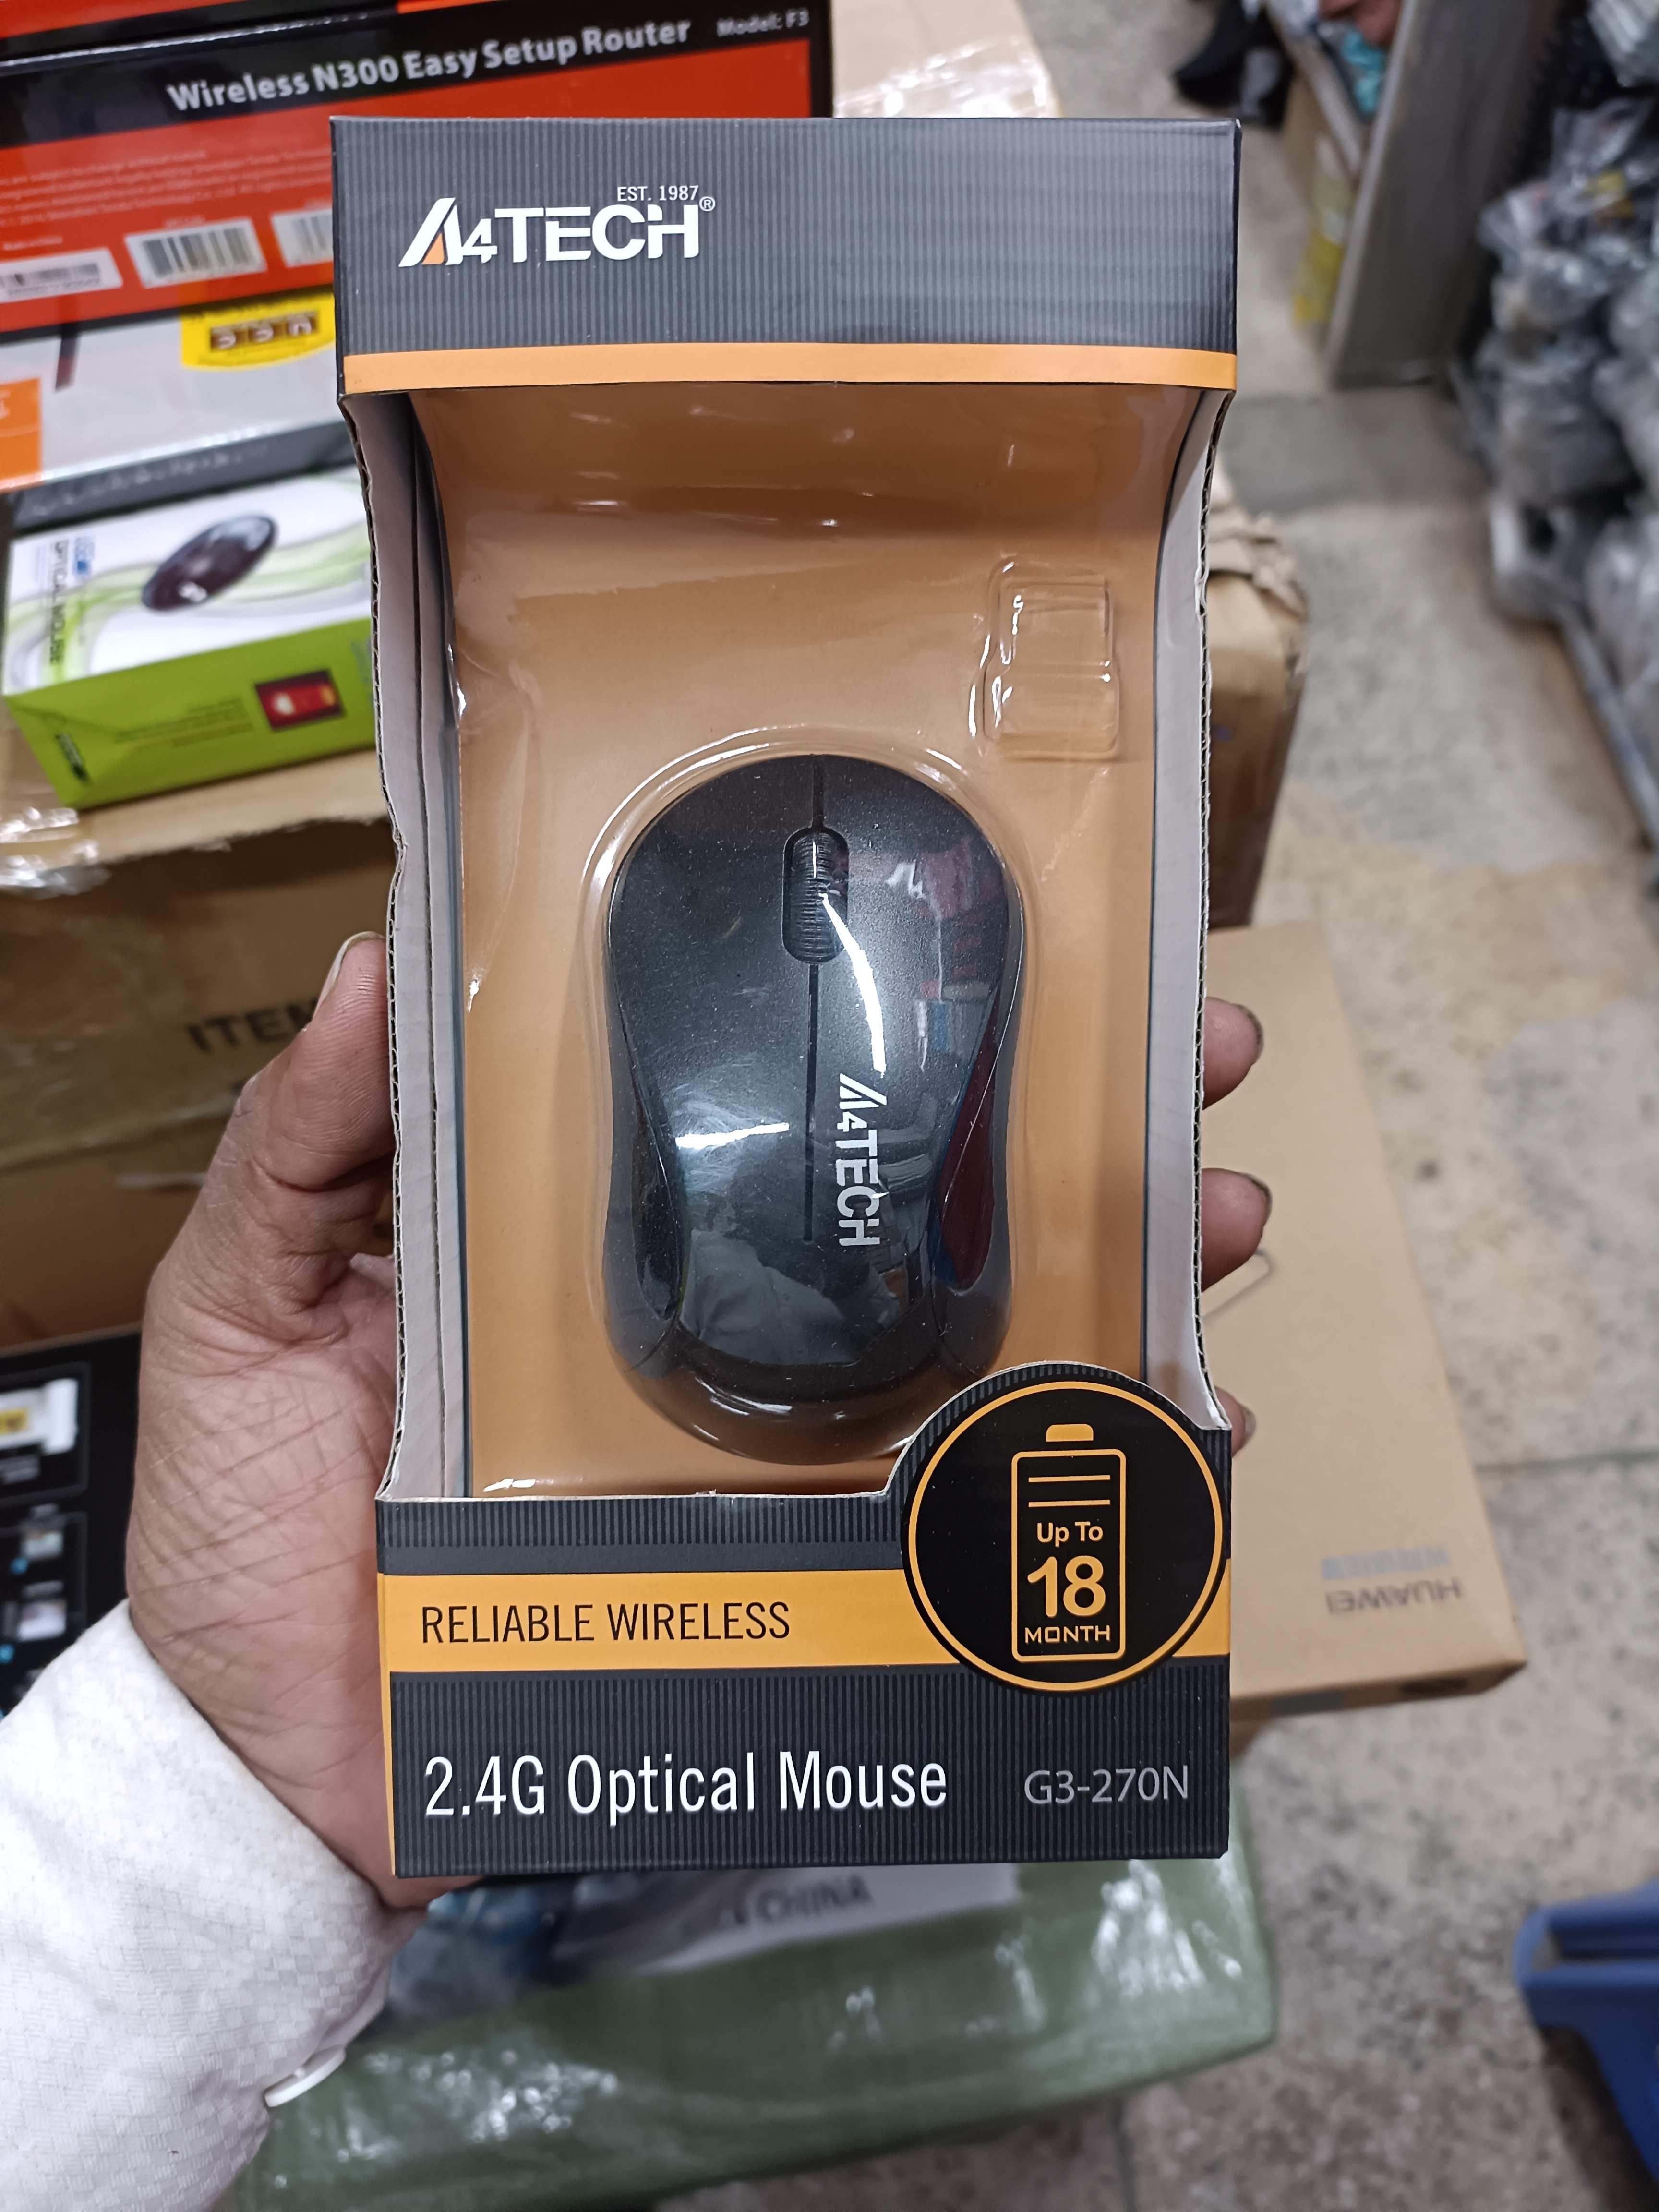 A4tech {Copy} Wireless Mouse G3-200N BD